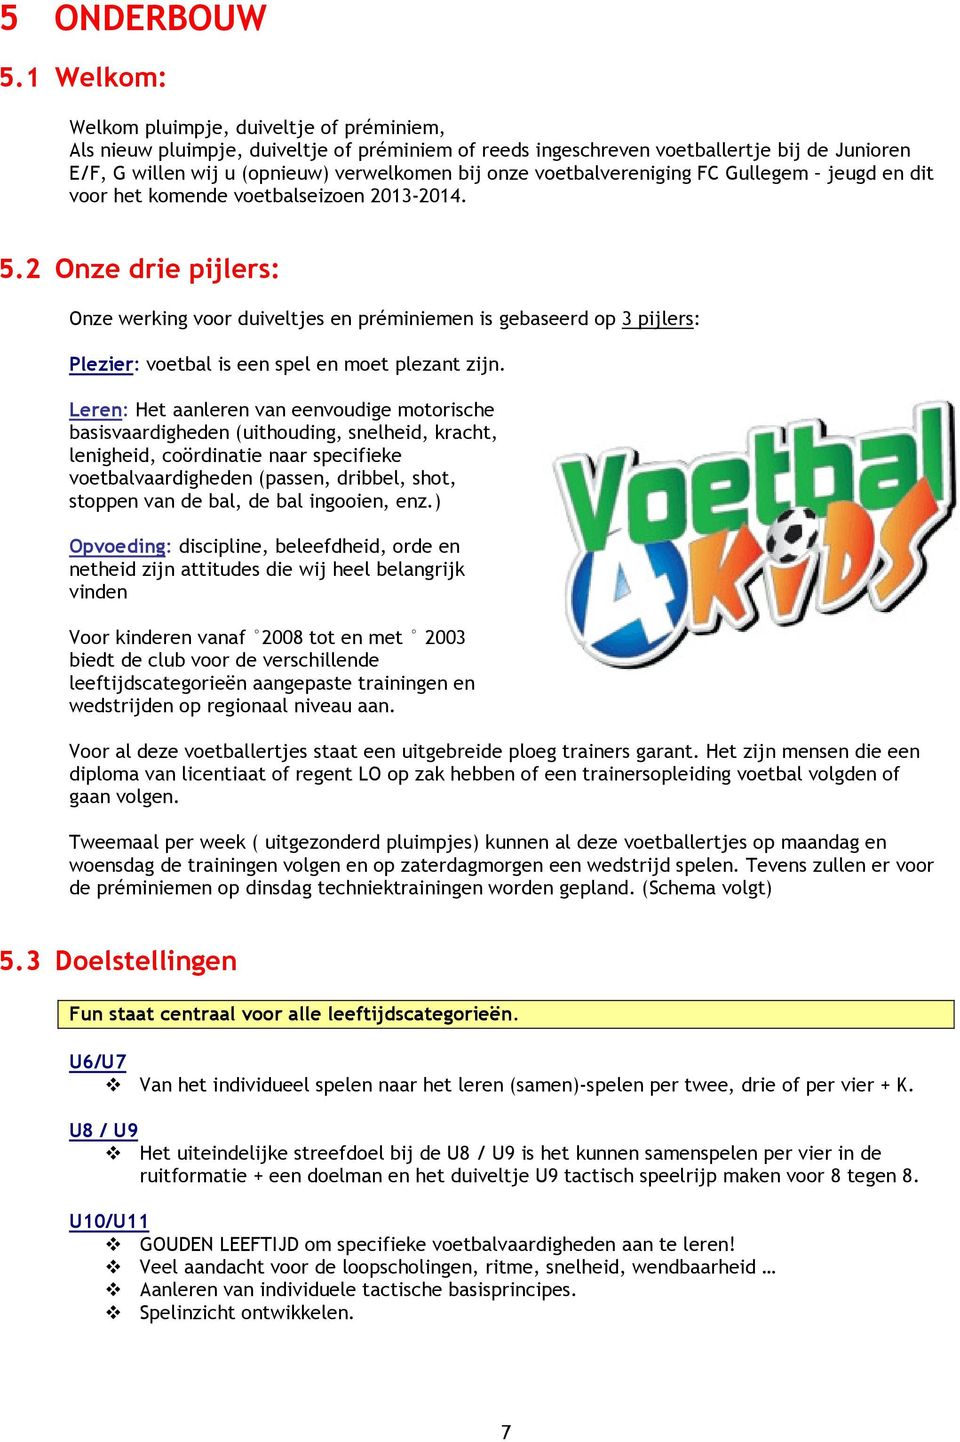 voetbalvereniging FC Gullegem jeugd en dit voor het komende voetbalseizoen 2013-2014. 5.